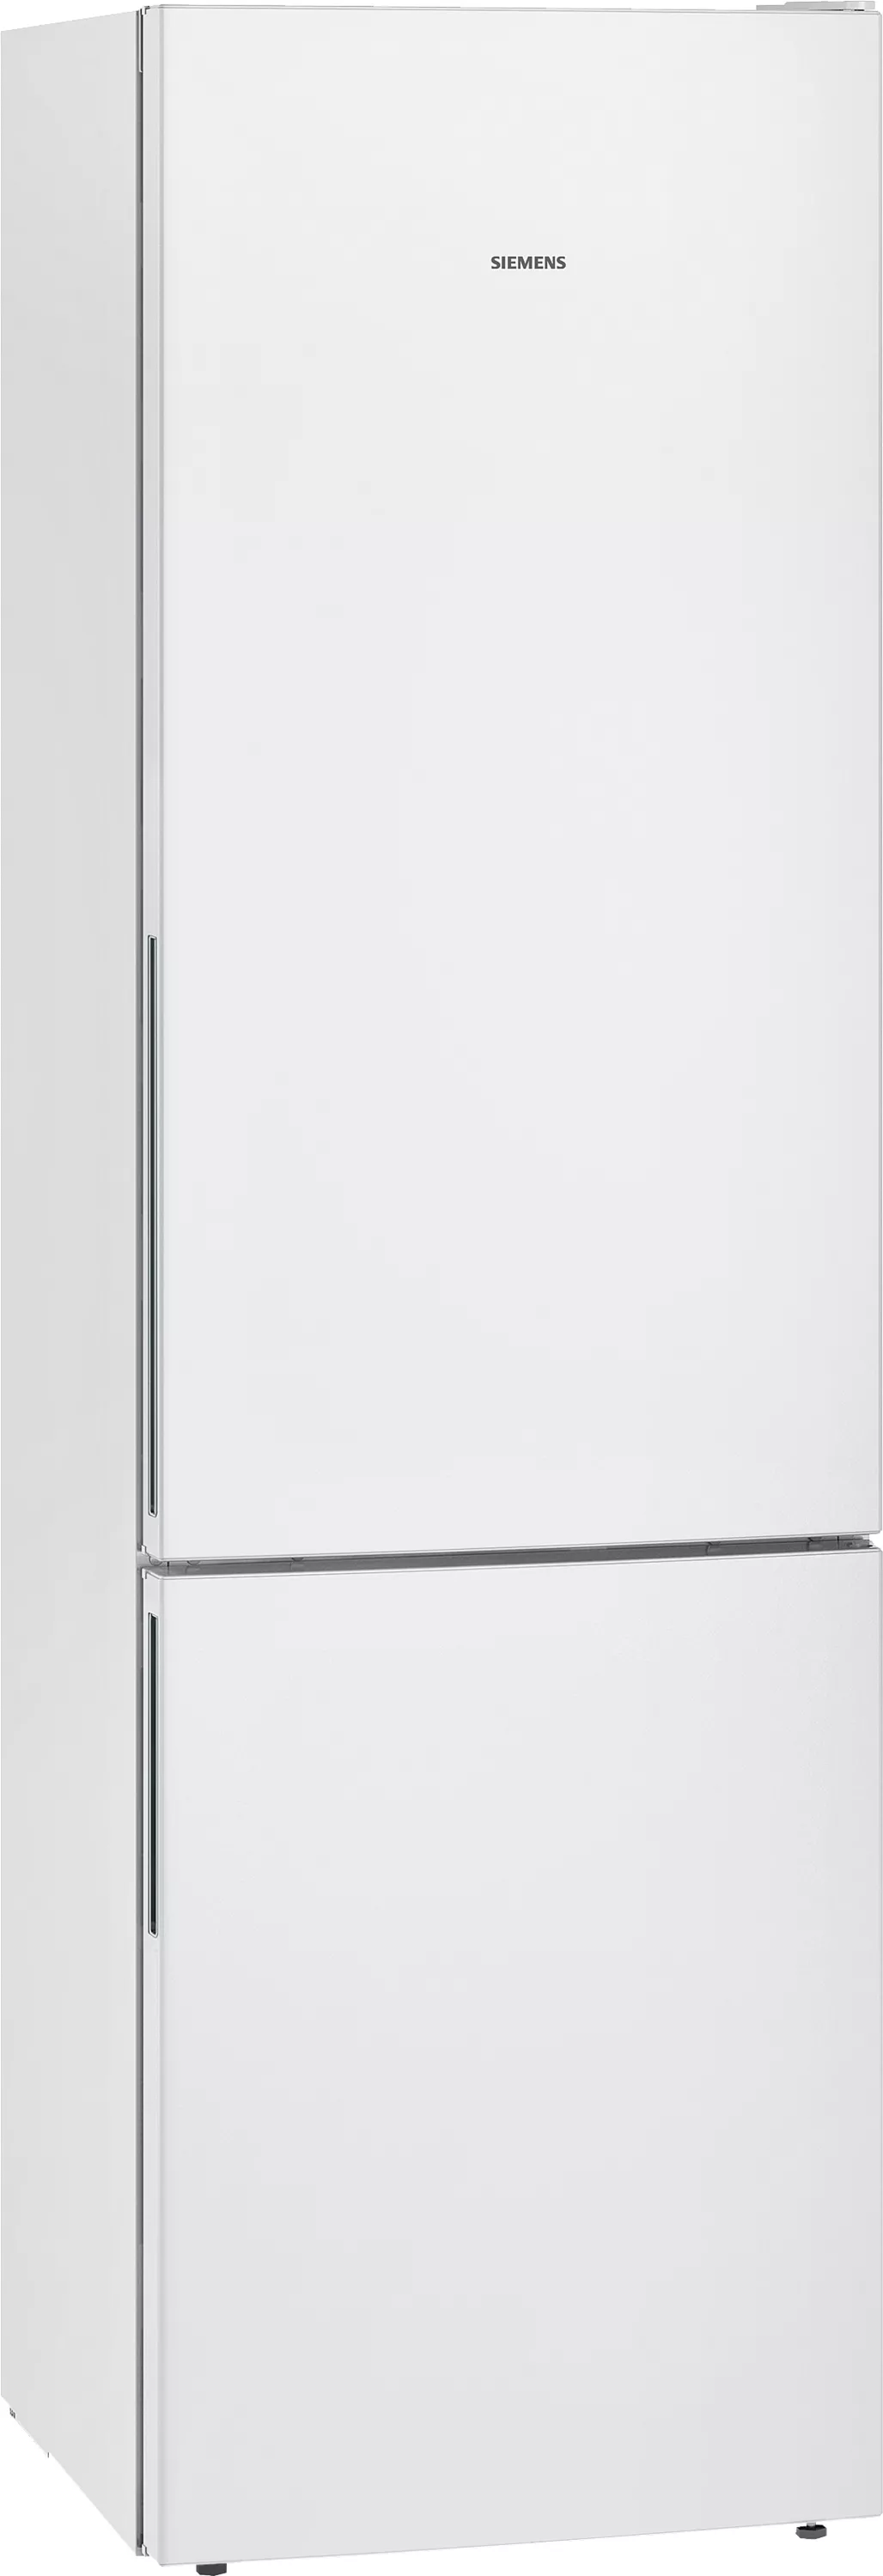 Siemens iQ500, KG39EAWCA, Freistehende Kühl-Gefrier-Kombination, 201 x 60 cm,  Weiß | 4242003868911